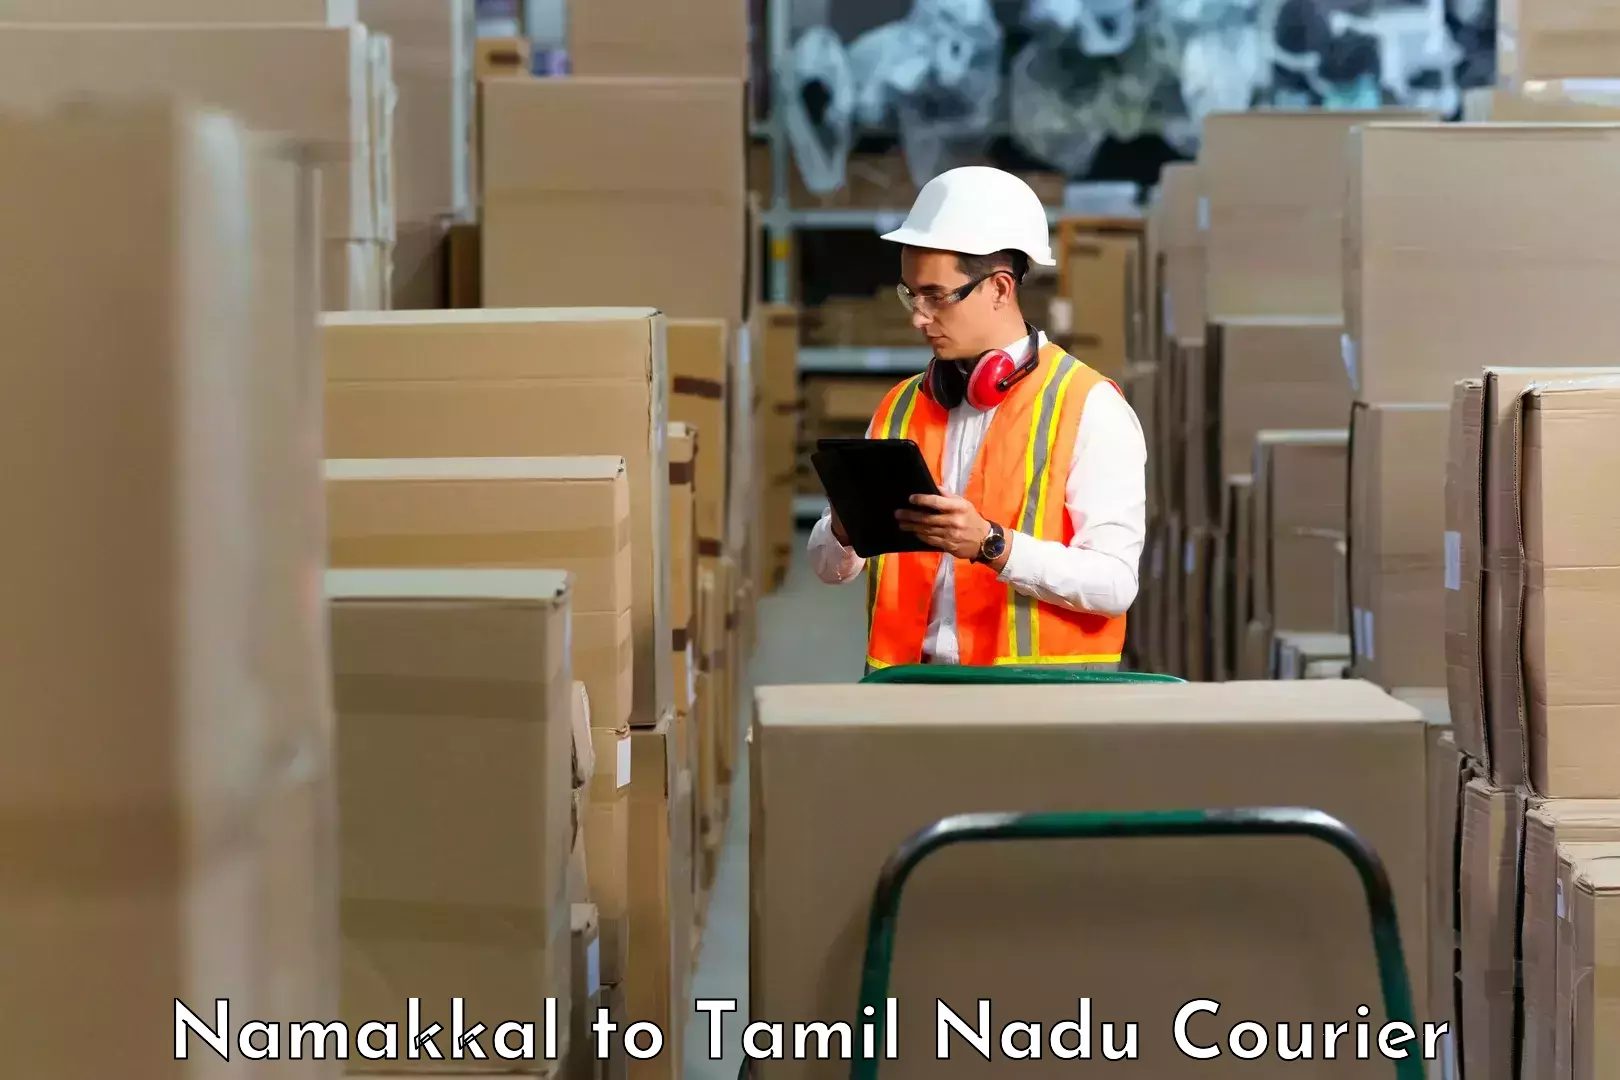 Specialized shipment handling Namakkal to Kagithapuram